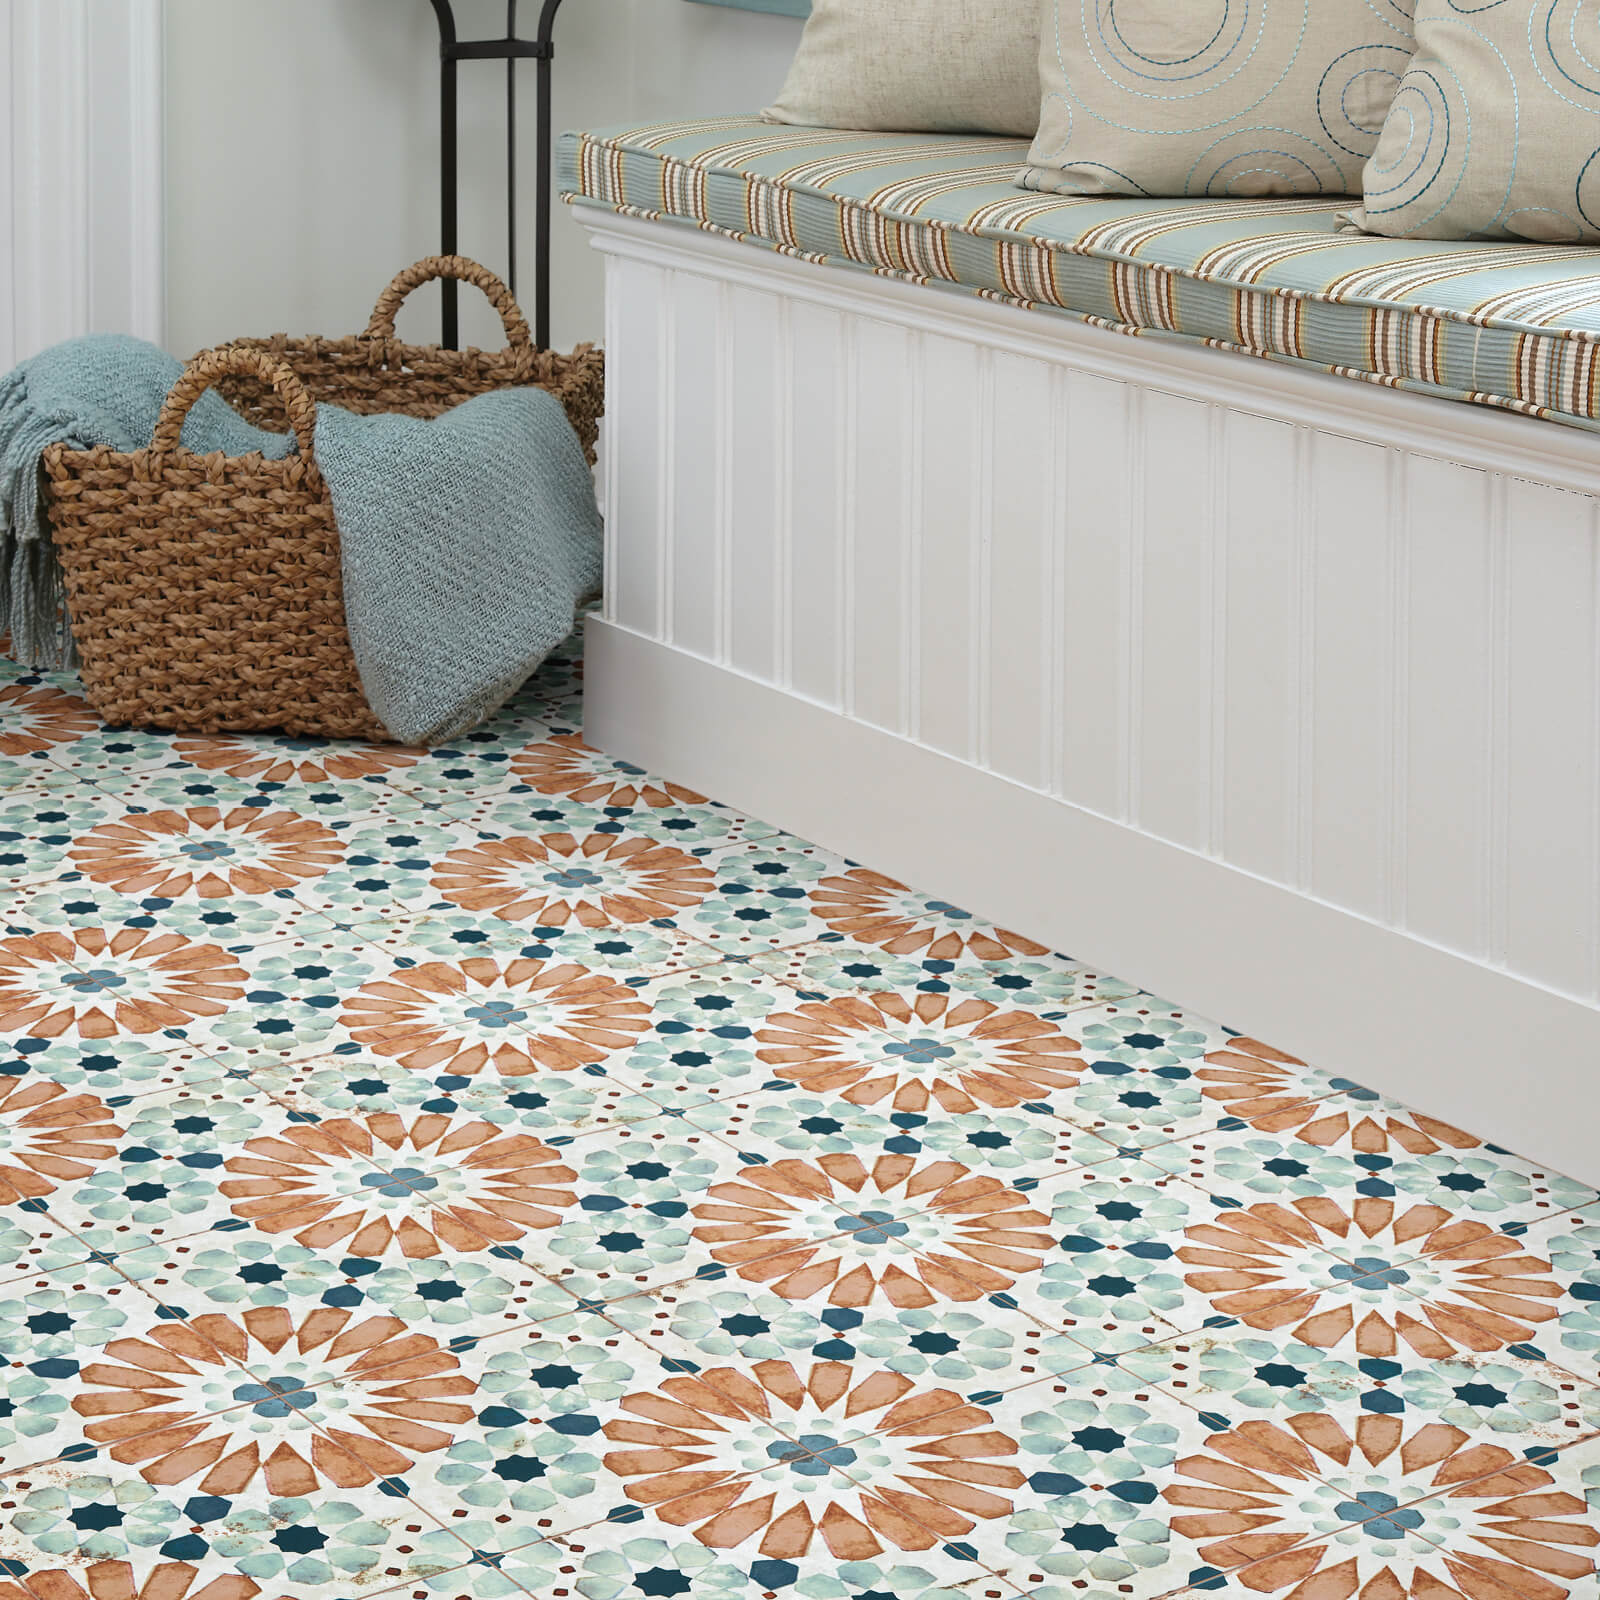 Tile design | Valley Carpet